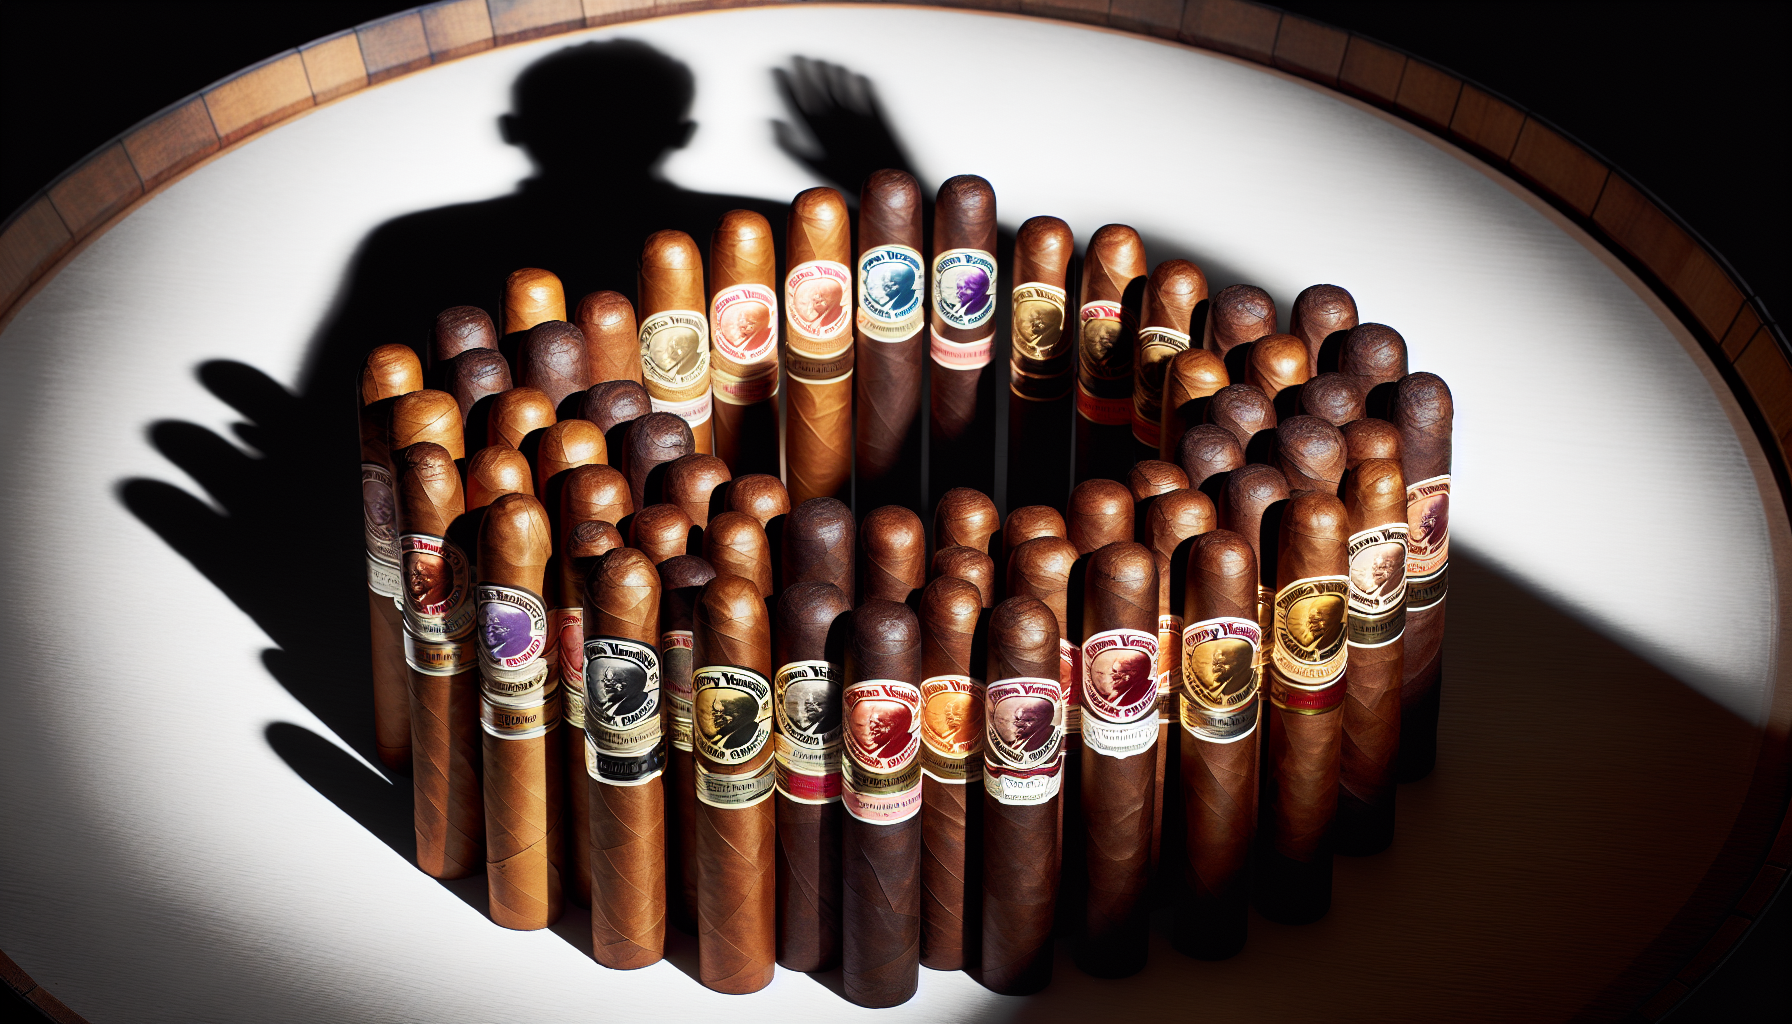 Pappy Van Winkle Barrel Fermented Cigars